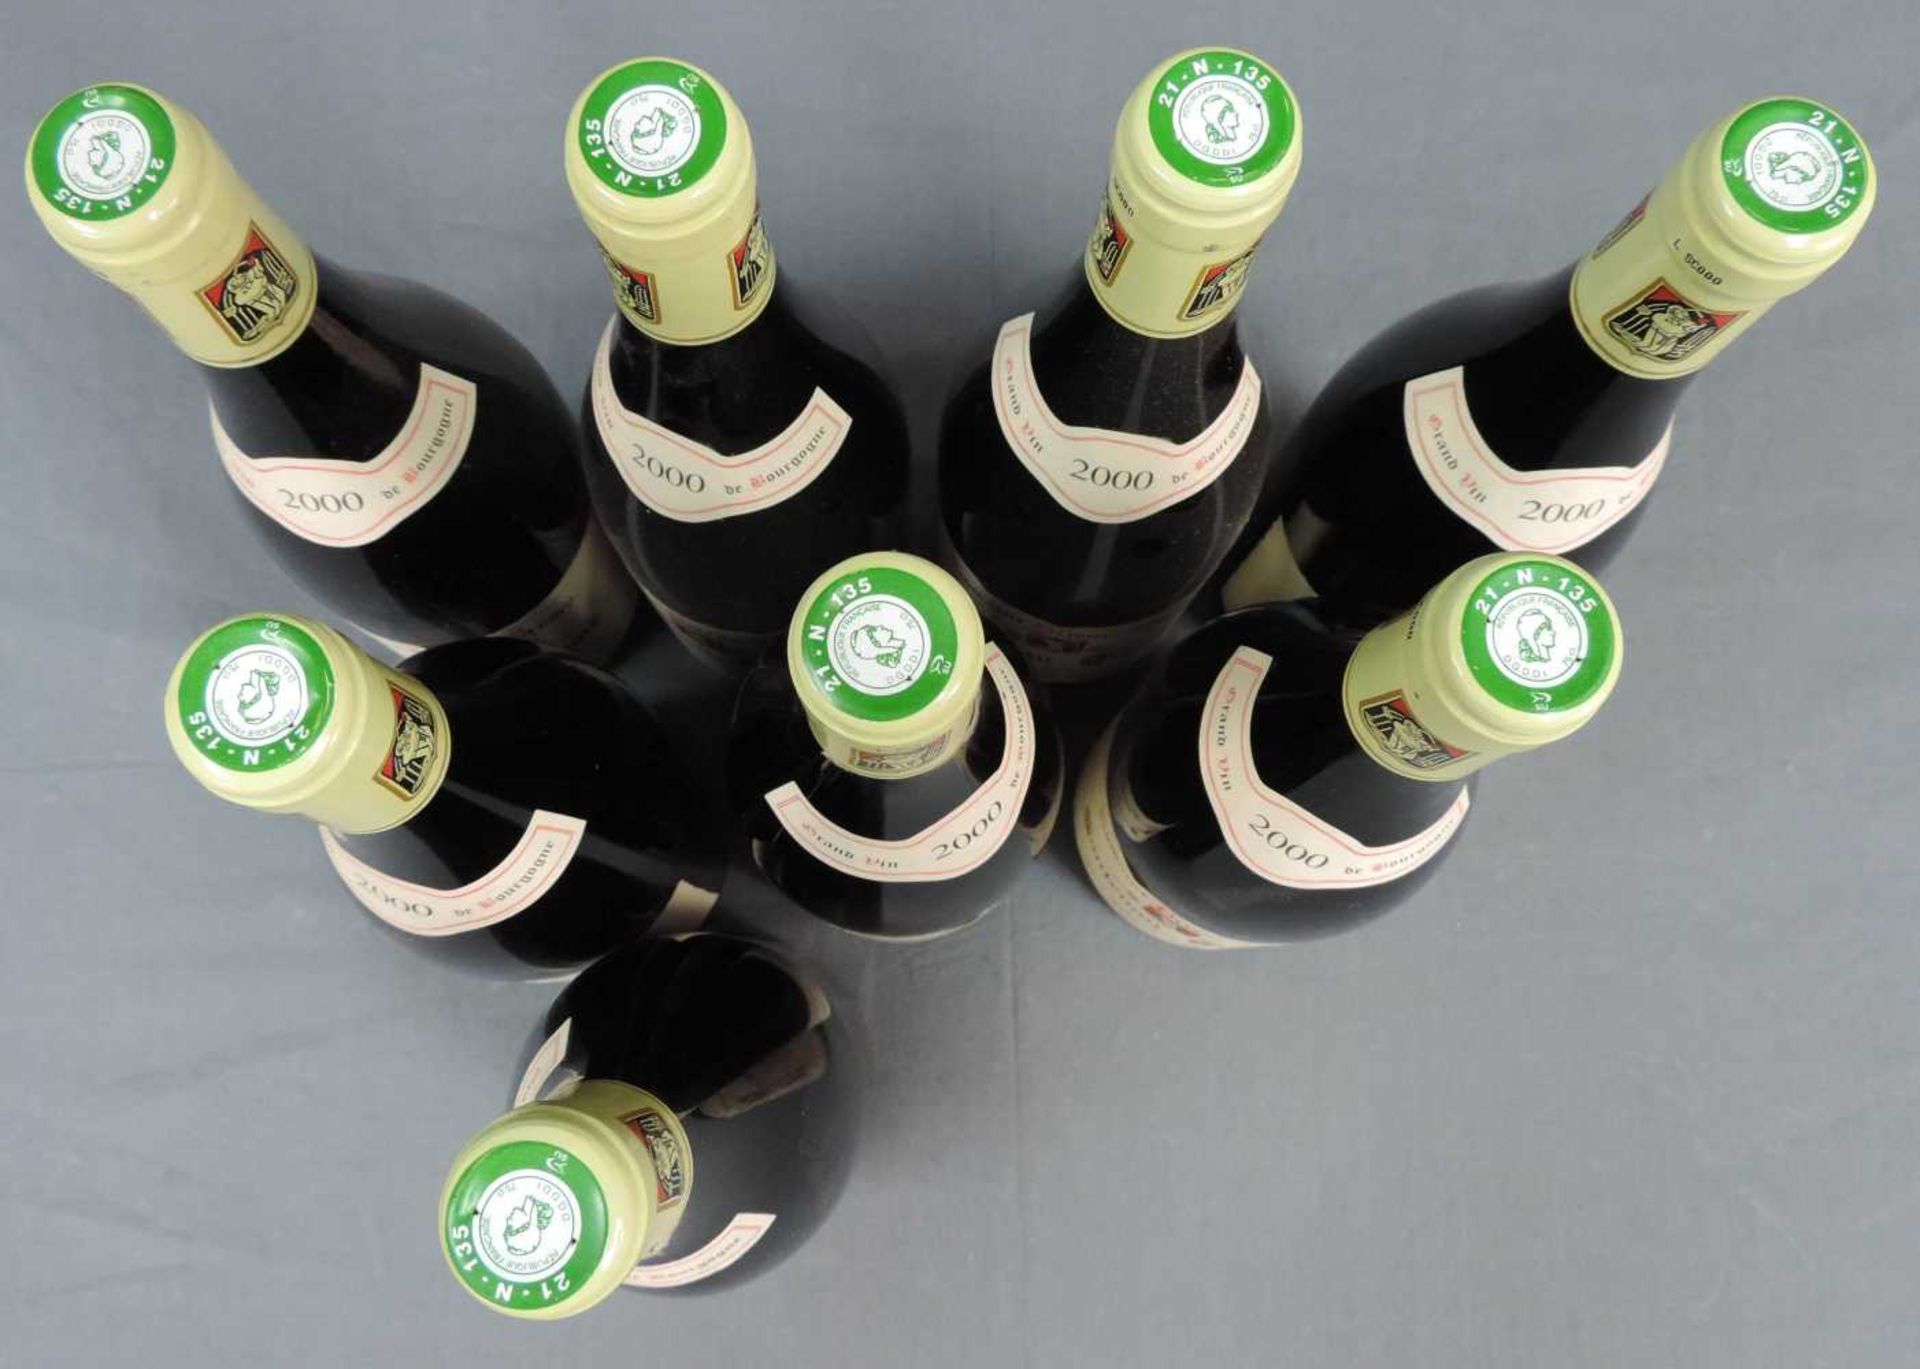 2000 Domaine Prieur - Brunet, Satenay Comme Premier Cru, France. 8 Flaschen, 750 ml, Alc., 13,5% - Bild 2 aus 6